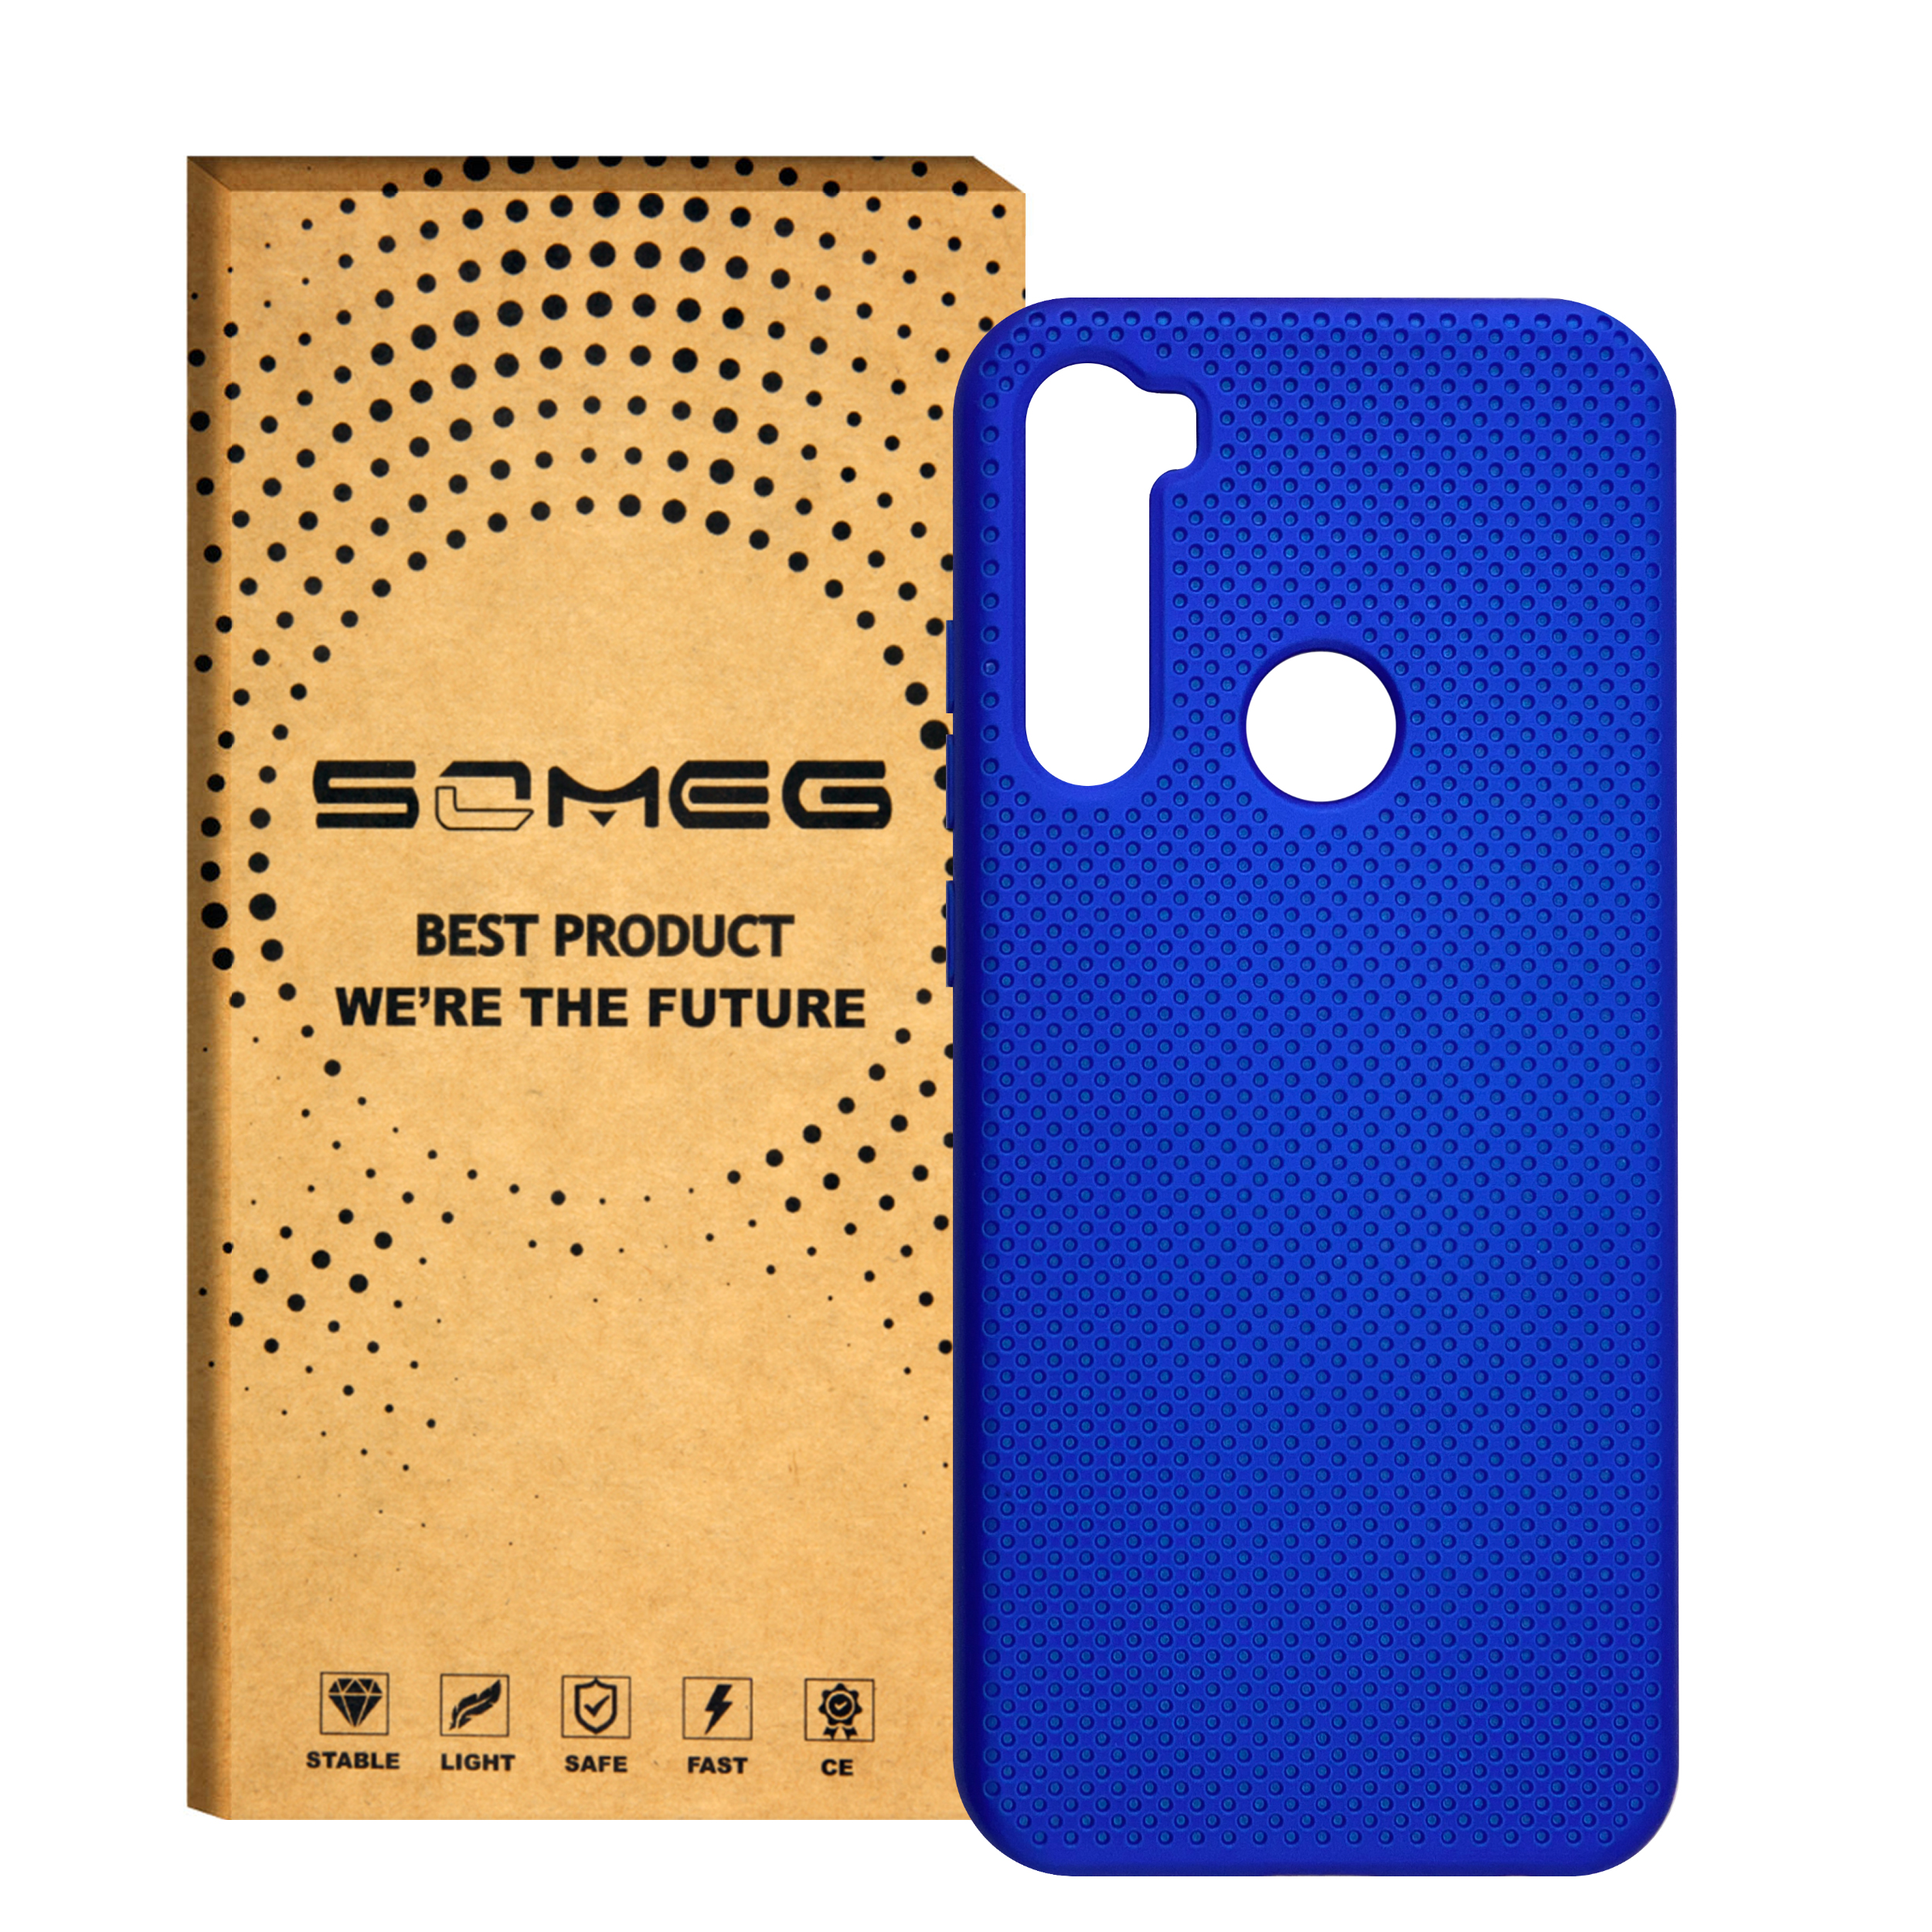 کاور سومگ مدل SMG-Needle مناسب برای گوشی موبایل شیائومی Redmi Note 8T